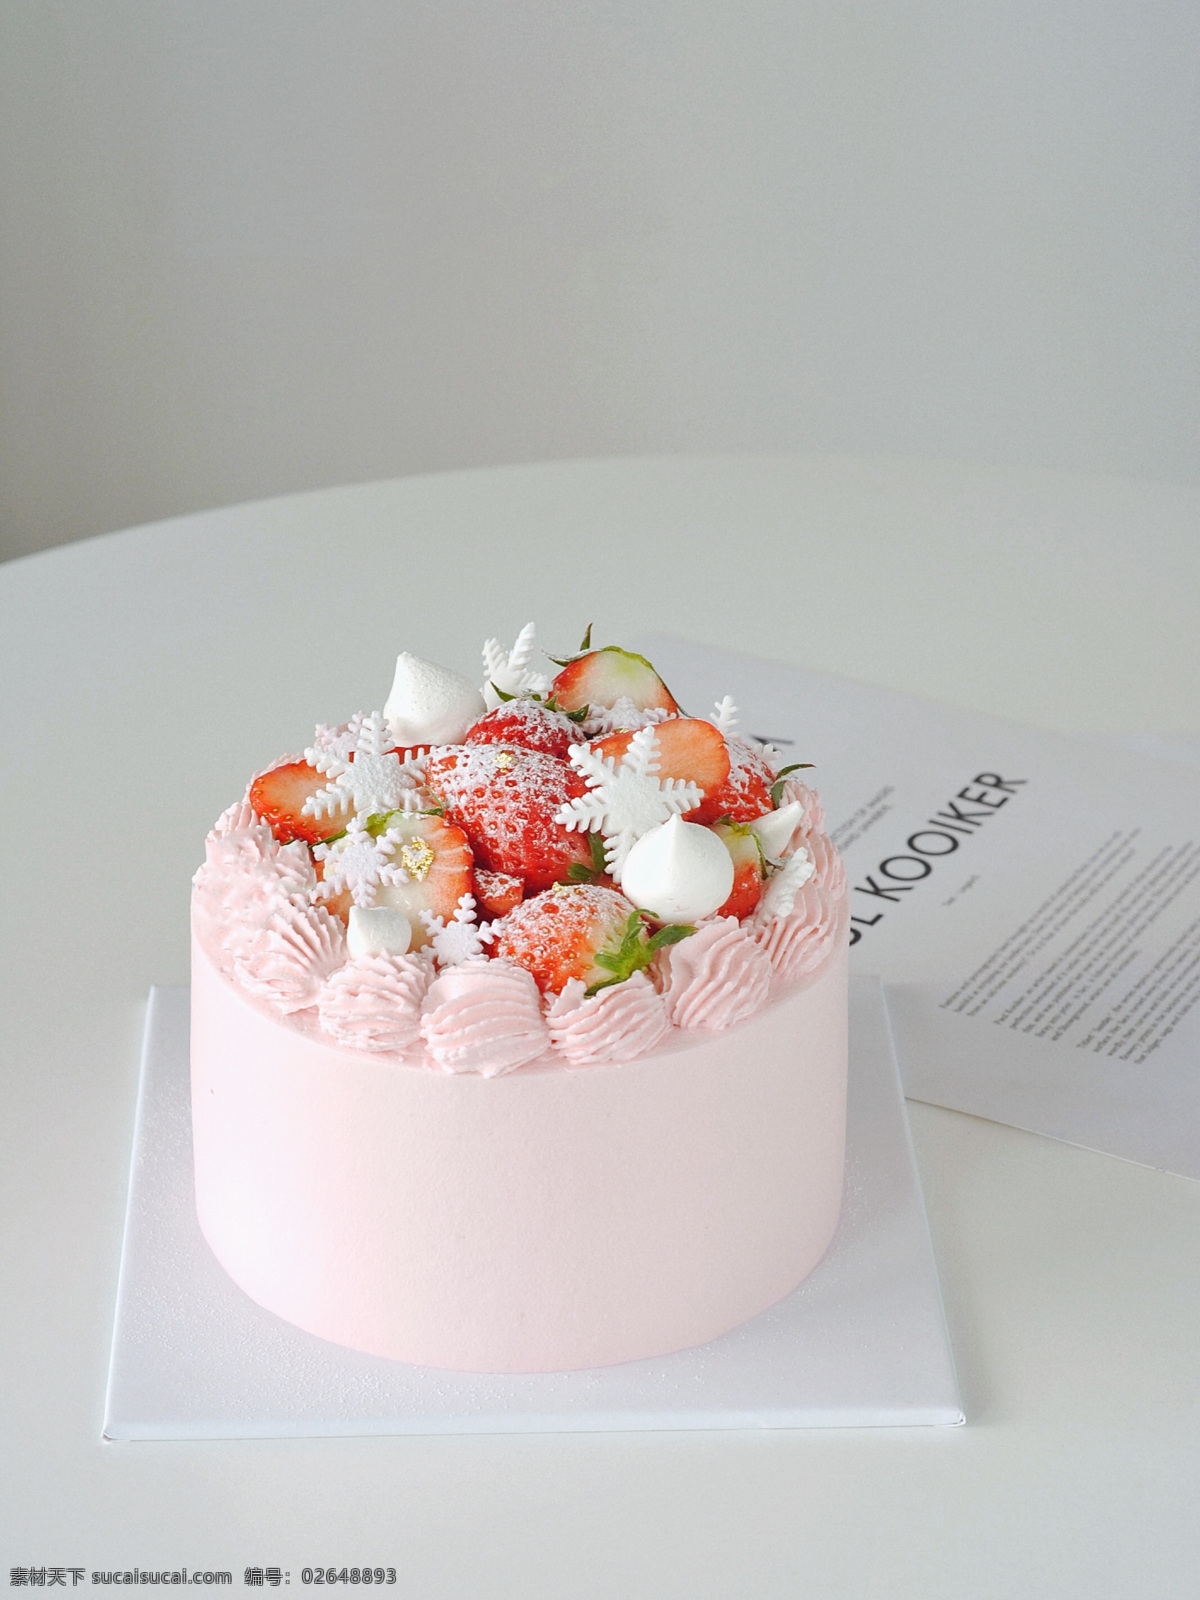 粉色草莓蛋糕 粉色蛋糕 草莓蛋糕 生日蛋糕 奶油蛋糕 蛋糕 餐饮美食 西餐美食